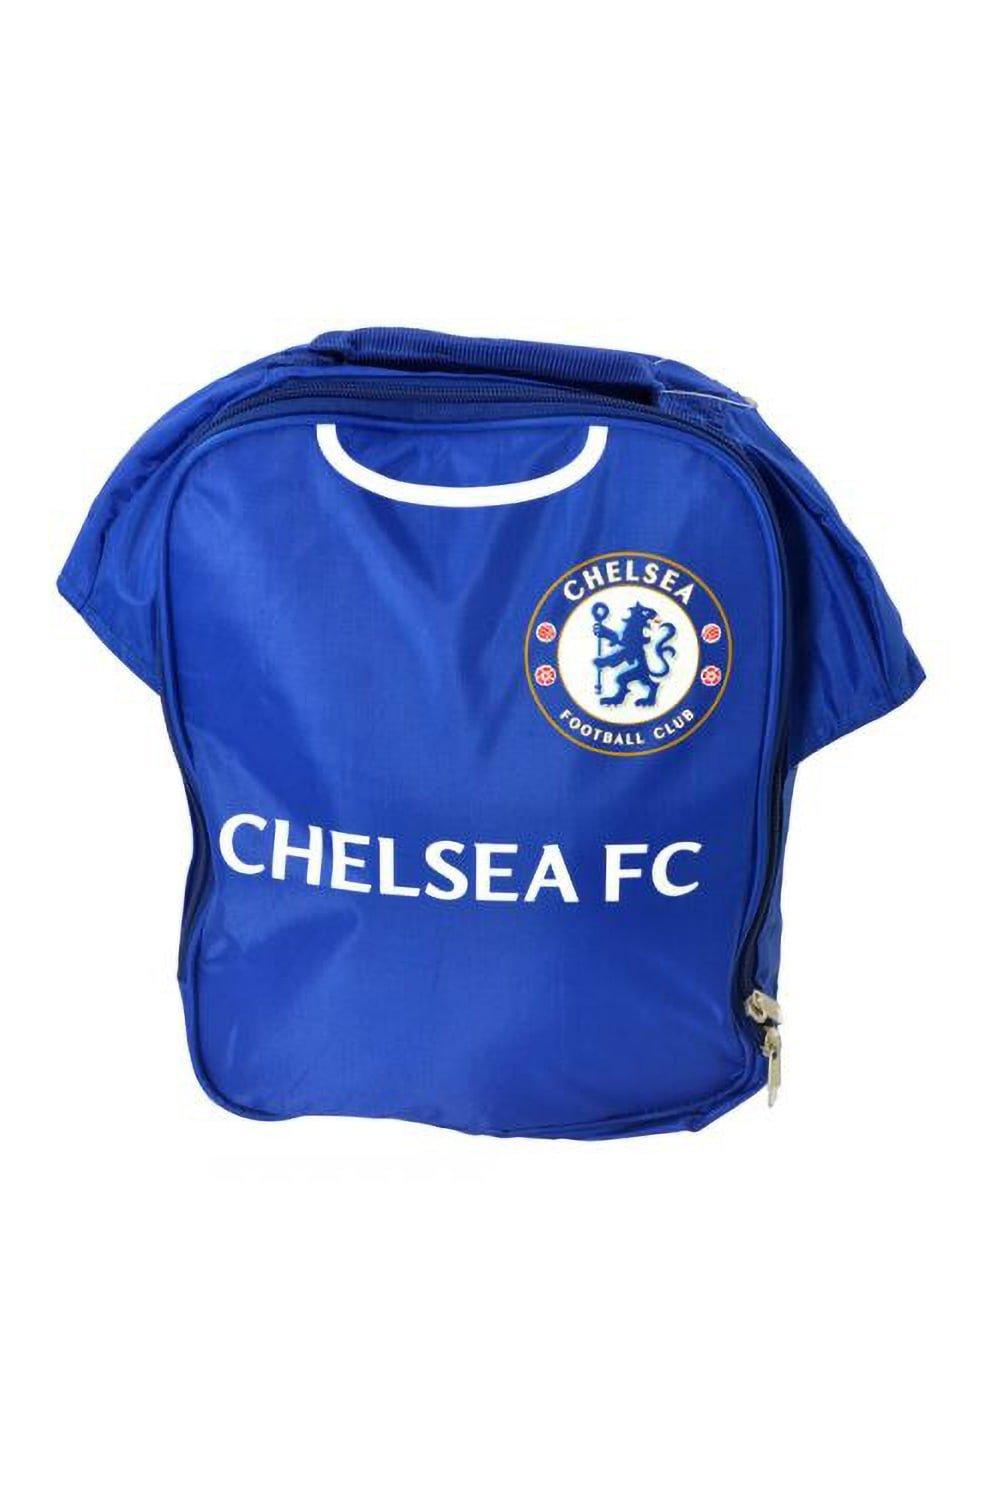 Официальная сумка для обеда футбольной формы Chelsea FC, синий ручка сувенирная челябинск